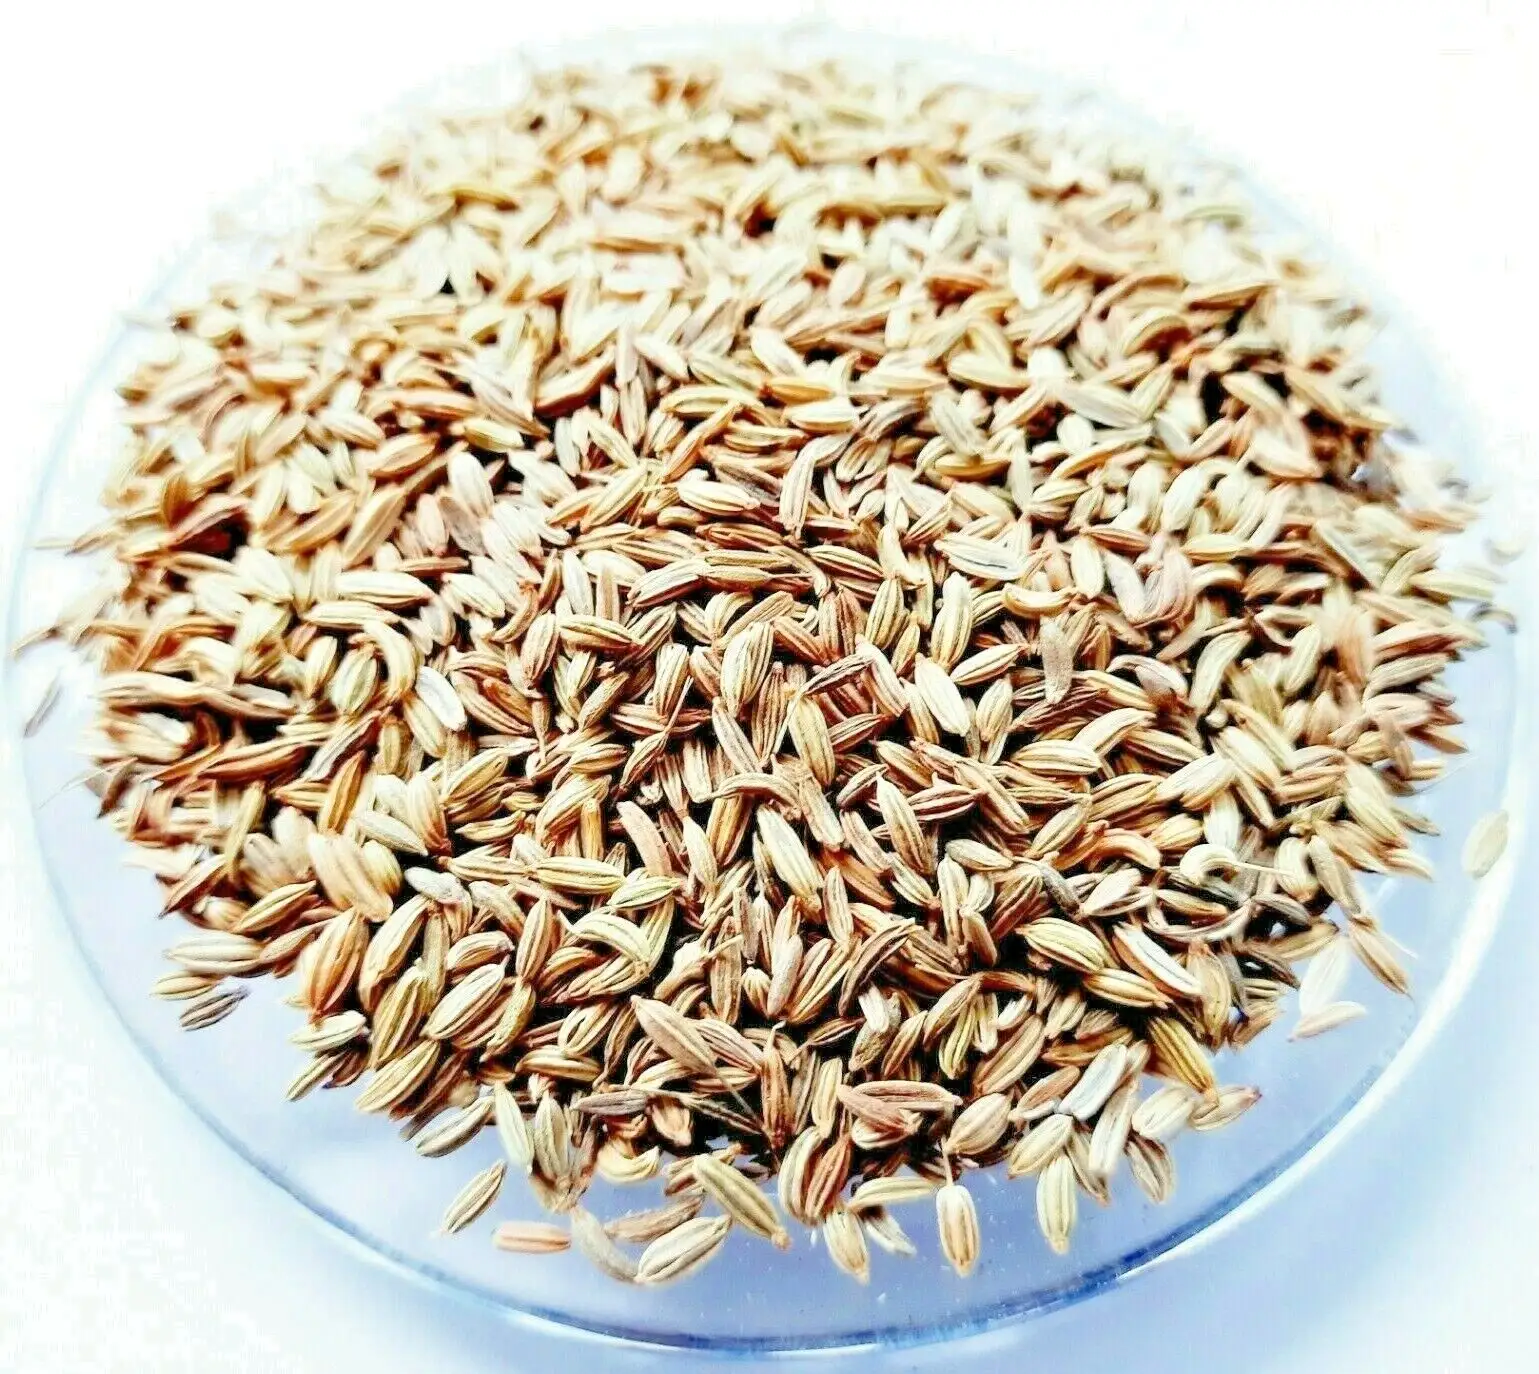 भारत में निर्मित उच्च गुणवत्ता वाले प्राकृतिक हरी सौंफ के बीज एकल मसाला, मीठा और लौंग के लिए दालचीनी काली मिर्च